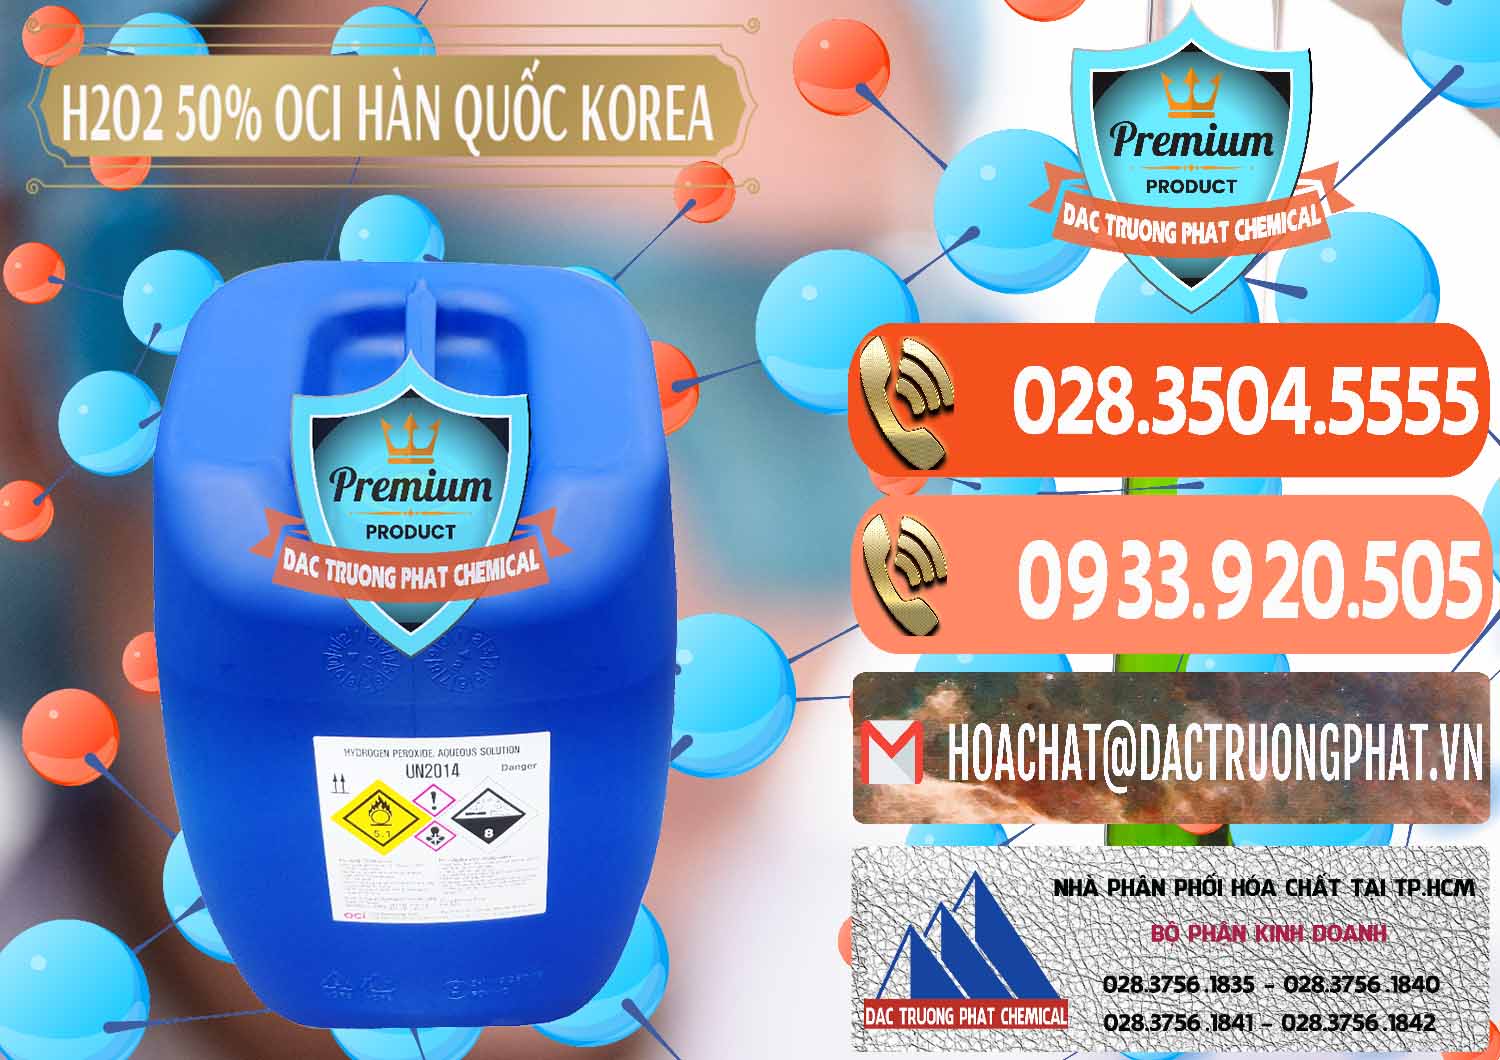 Công ty chuyên phân phối & bán H2O2 - Hydrogen Peroxide 50% OCI Hàn Quốc Korea - 0075 - Đơn vị kinh doanh & cung cấp hóa chất tại TP.HCM - hoachatmientay.com